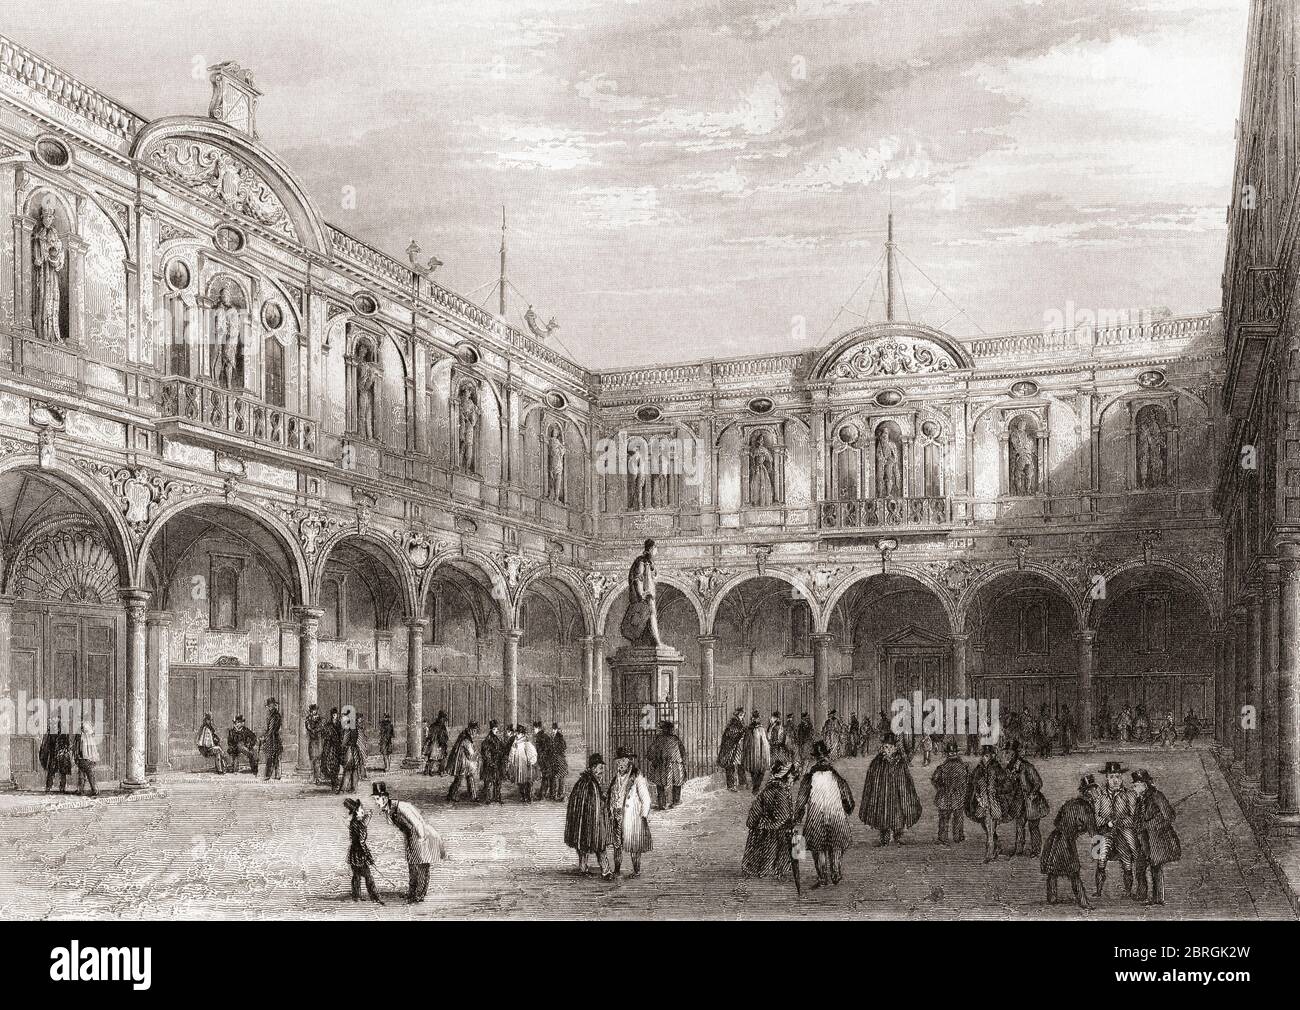 Royal Exchange, London, England, 19. Jahrhundert. Dieses Gebäude wurde 1838 durch einen Brand zerstört. Aus der Geschichte Londons: Illustriert durch Ansichten in London und Westminster, erschienen um 1838. Stockfoto